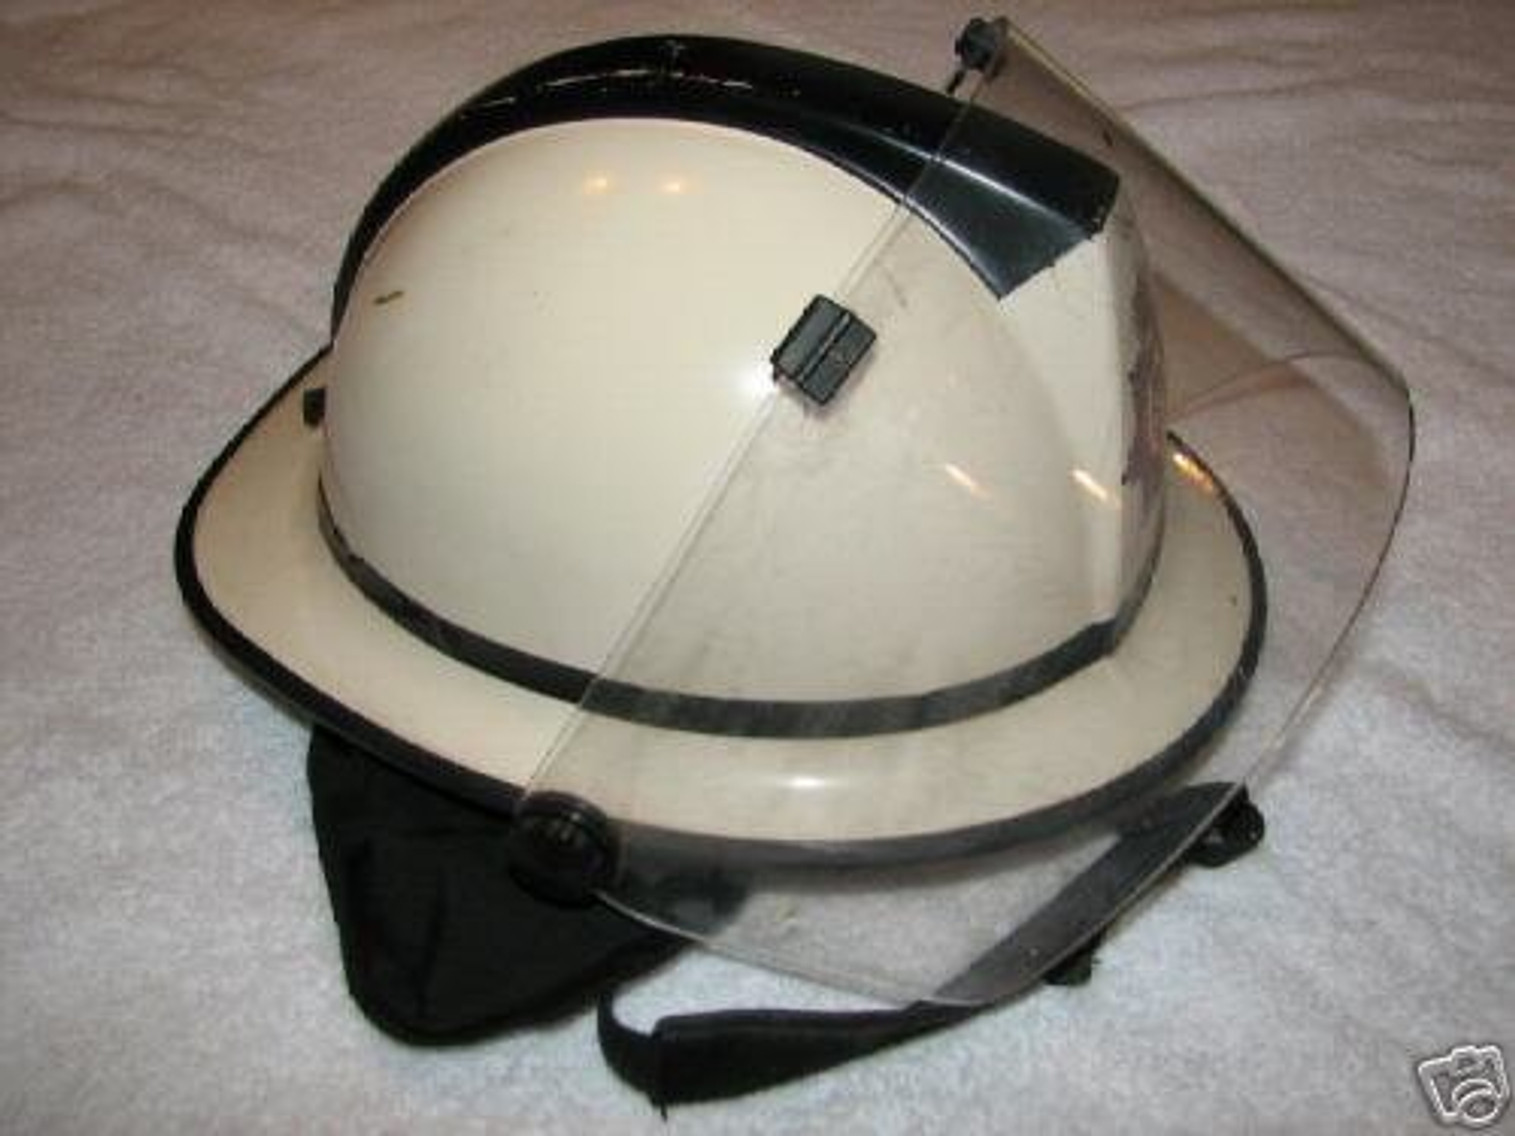 British Fireman's Helmet